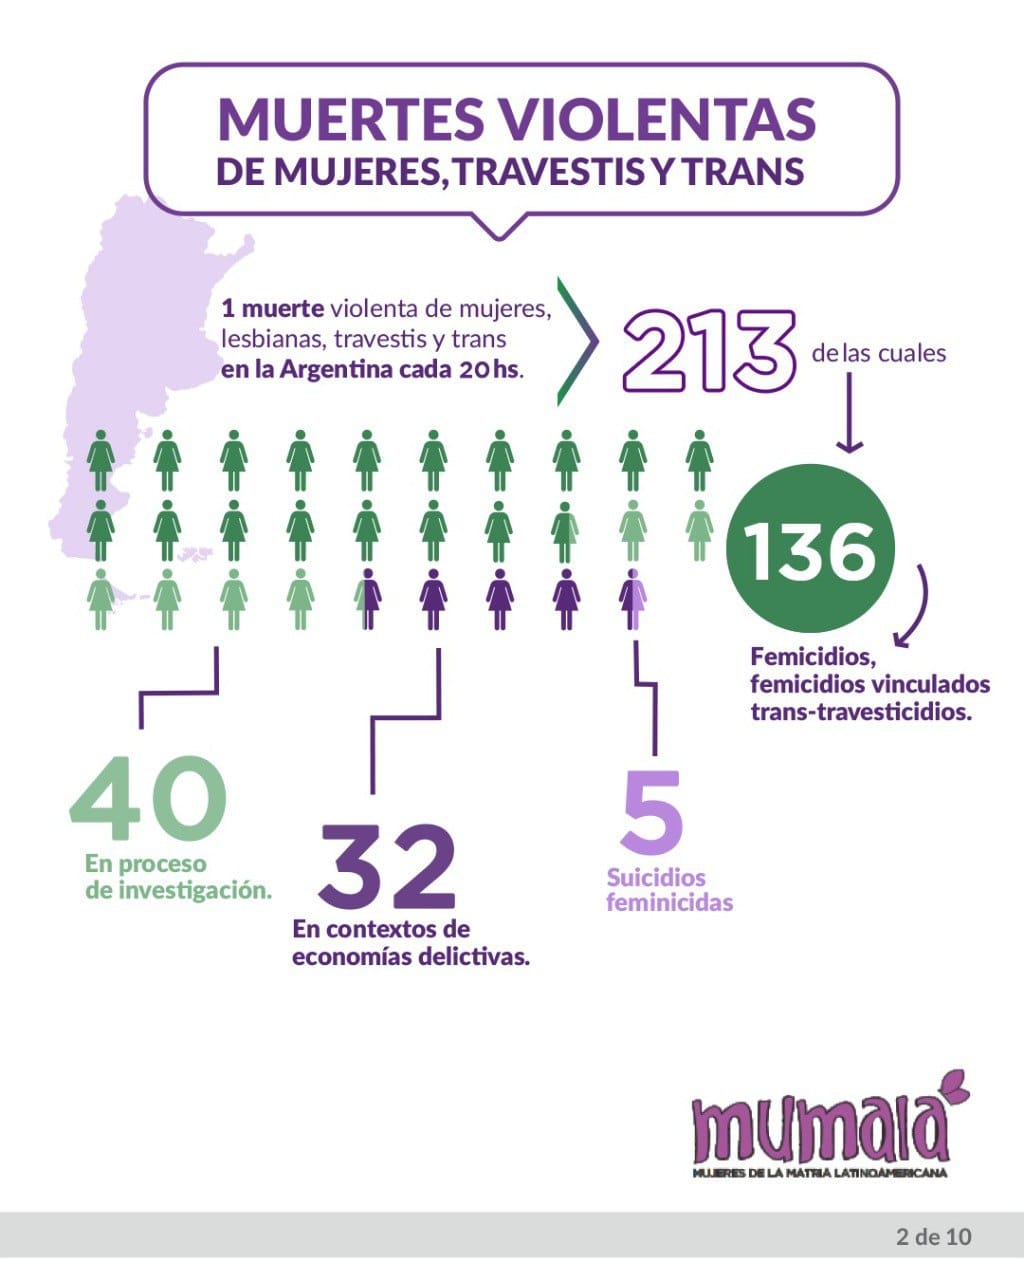 Femicidios en lo que va del año: 213 muertes violentas de mujeres, travestis - trans, en un período de una cada 20 horas imagen-18